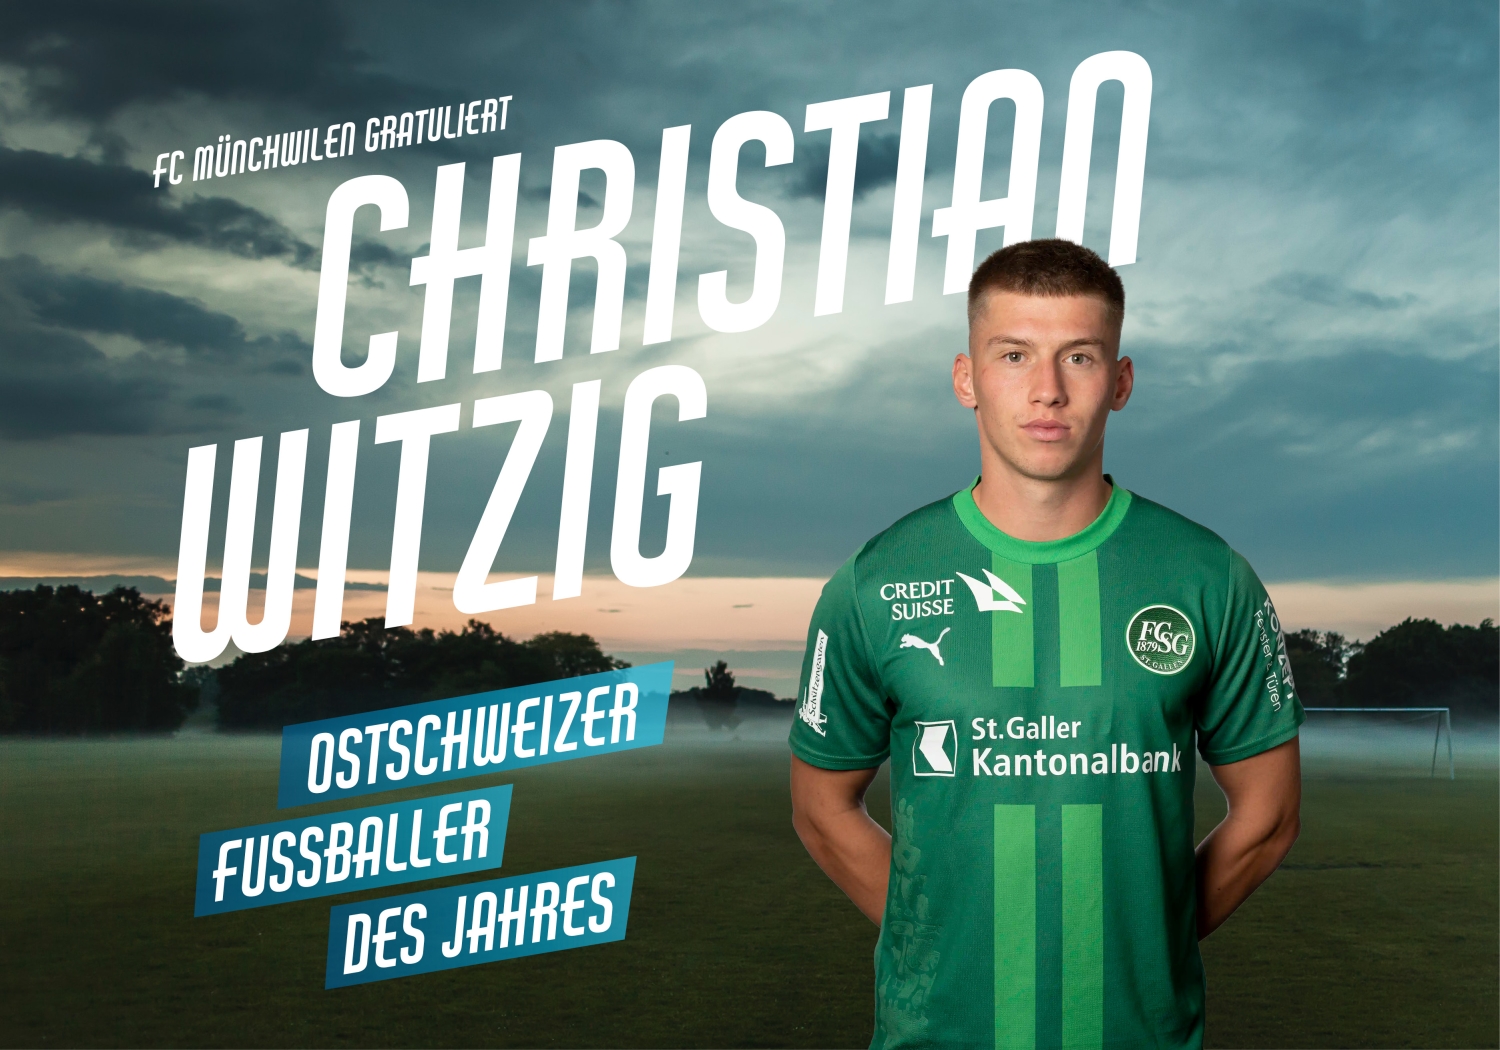 Ostschweizer Fussballer des Jahres!